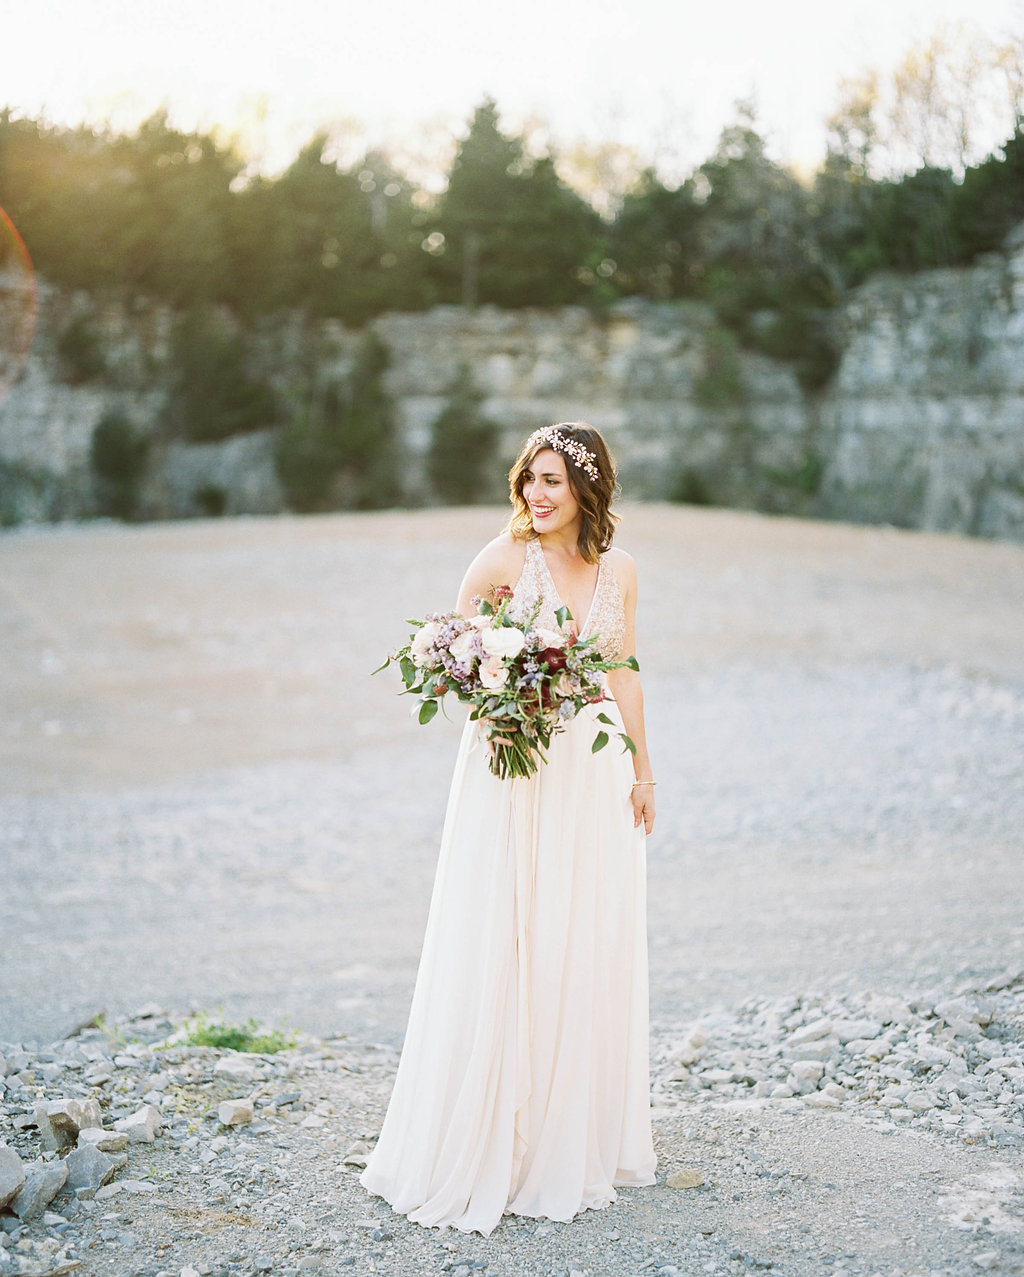 Rock quarry bridal portrait with lush, organic floral design // Nashville Florist